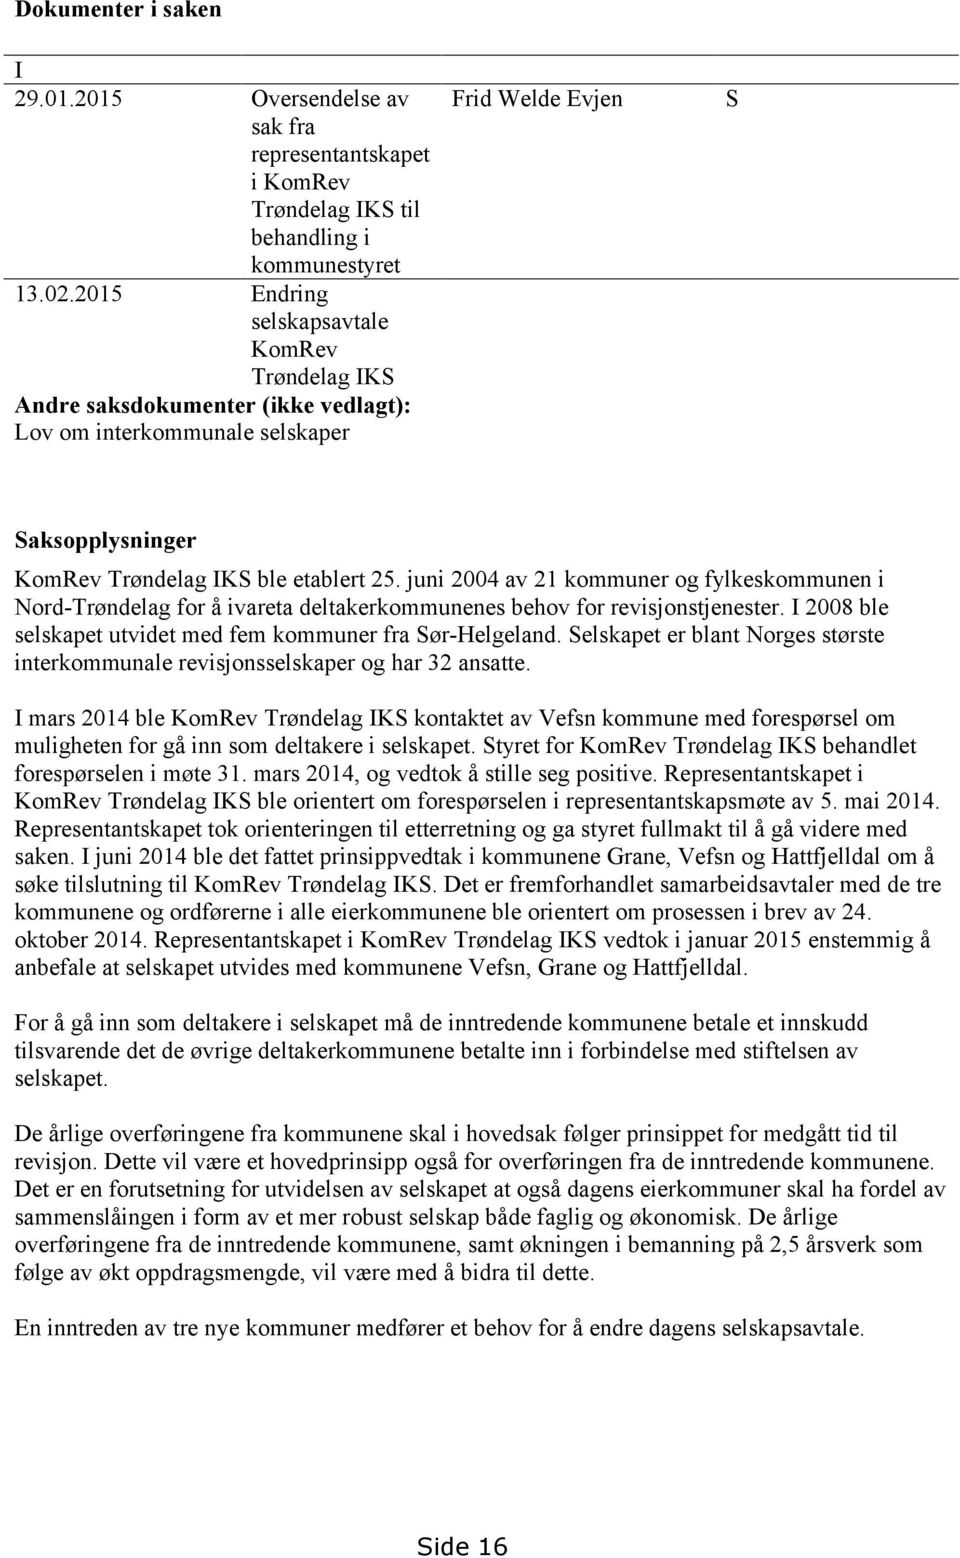 juni 2004 av 21 kommuner og fylkeskommunen i Nord-Trøndelag for å ivareta deltakerkommunenes behov for revisjonstjenester. I 2008 ble selskapet utvidet med fem kommuner fra Sør-Helgeland.